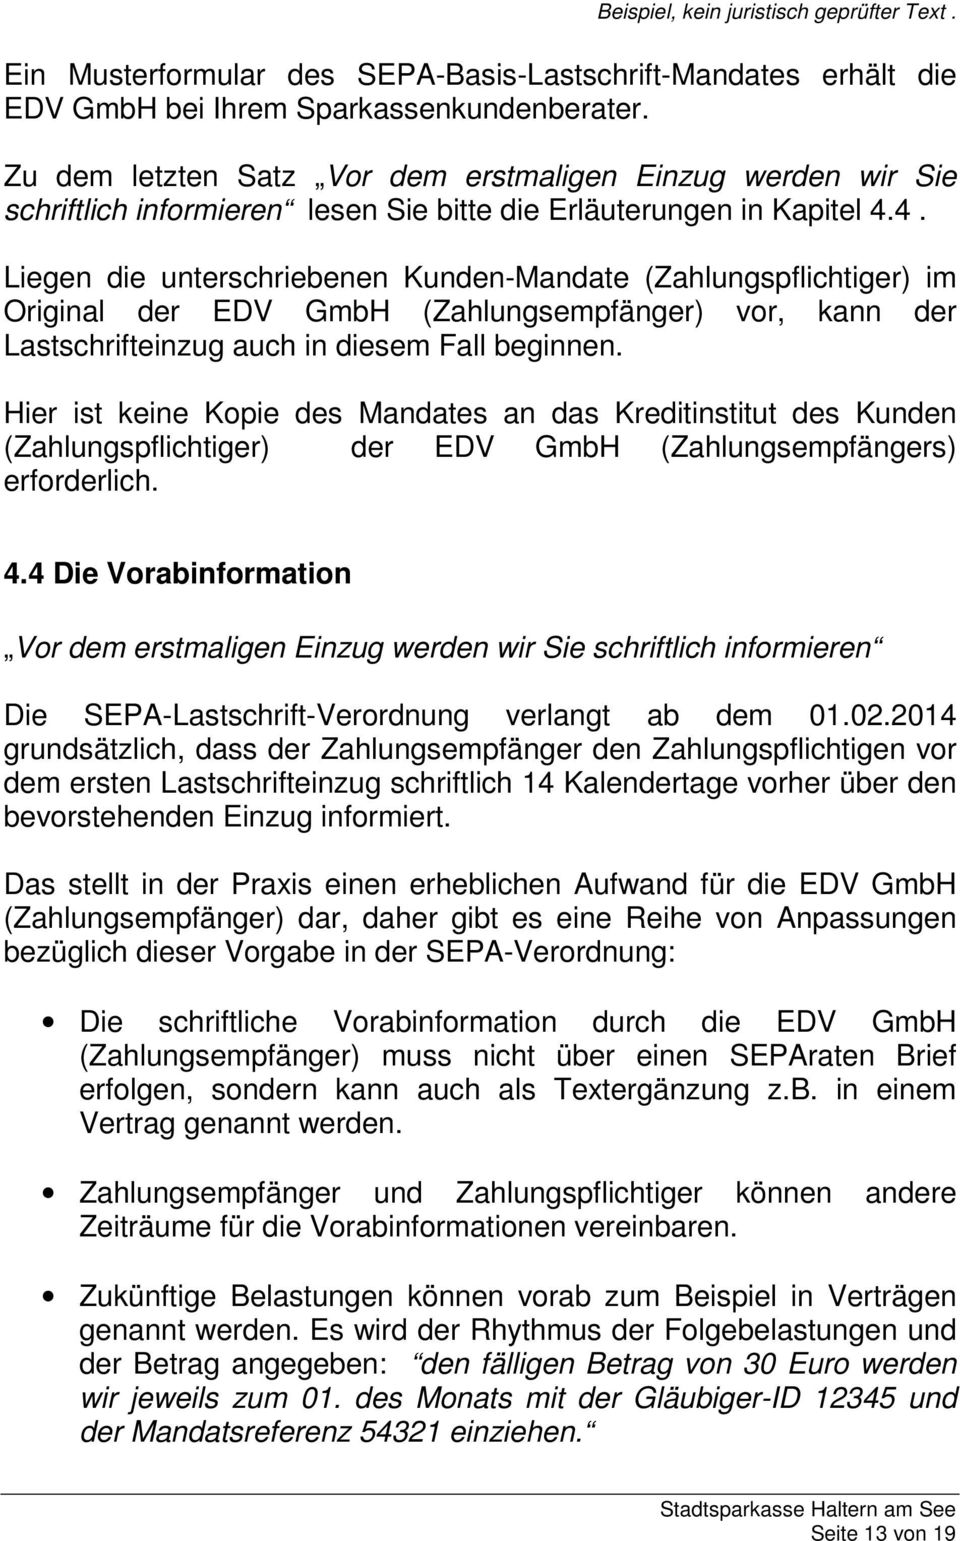 4. Liegen die unterschriebenen Kunden-Mandate (Zahlungspflichtiger) im Original der EDV GmbH (Zahlungsempfänger) vor, kann der Lastschrifteinzug auch in diesem Fall beginnen.